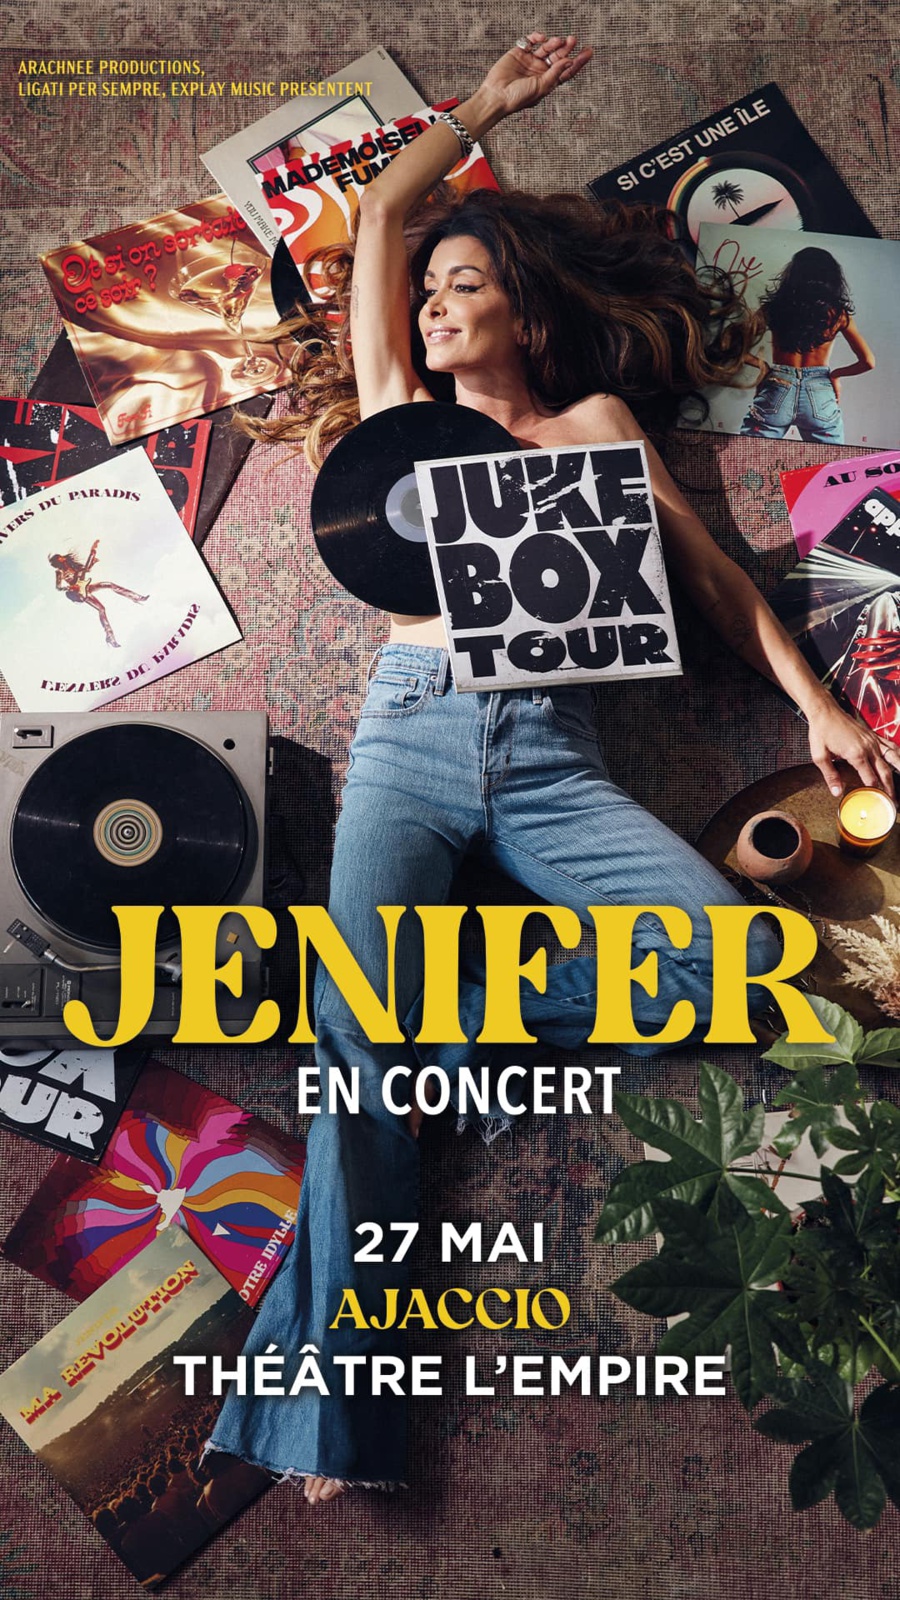 Jenifer en concert - Théâtre l'Empire - Aiacciu